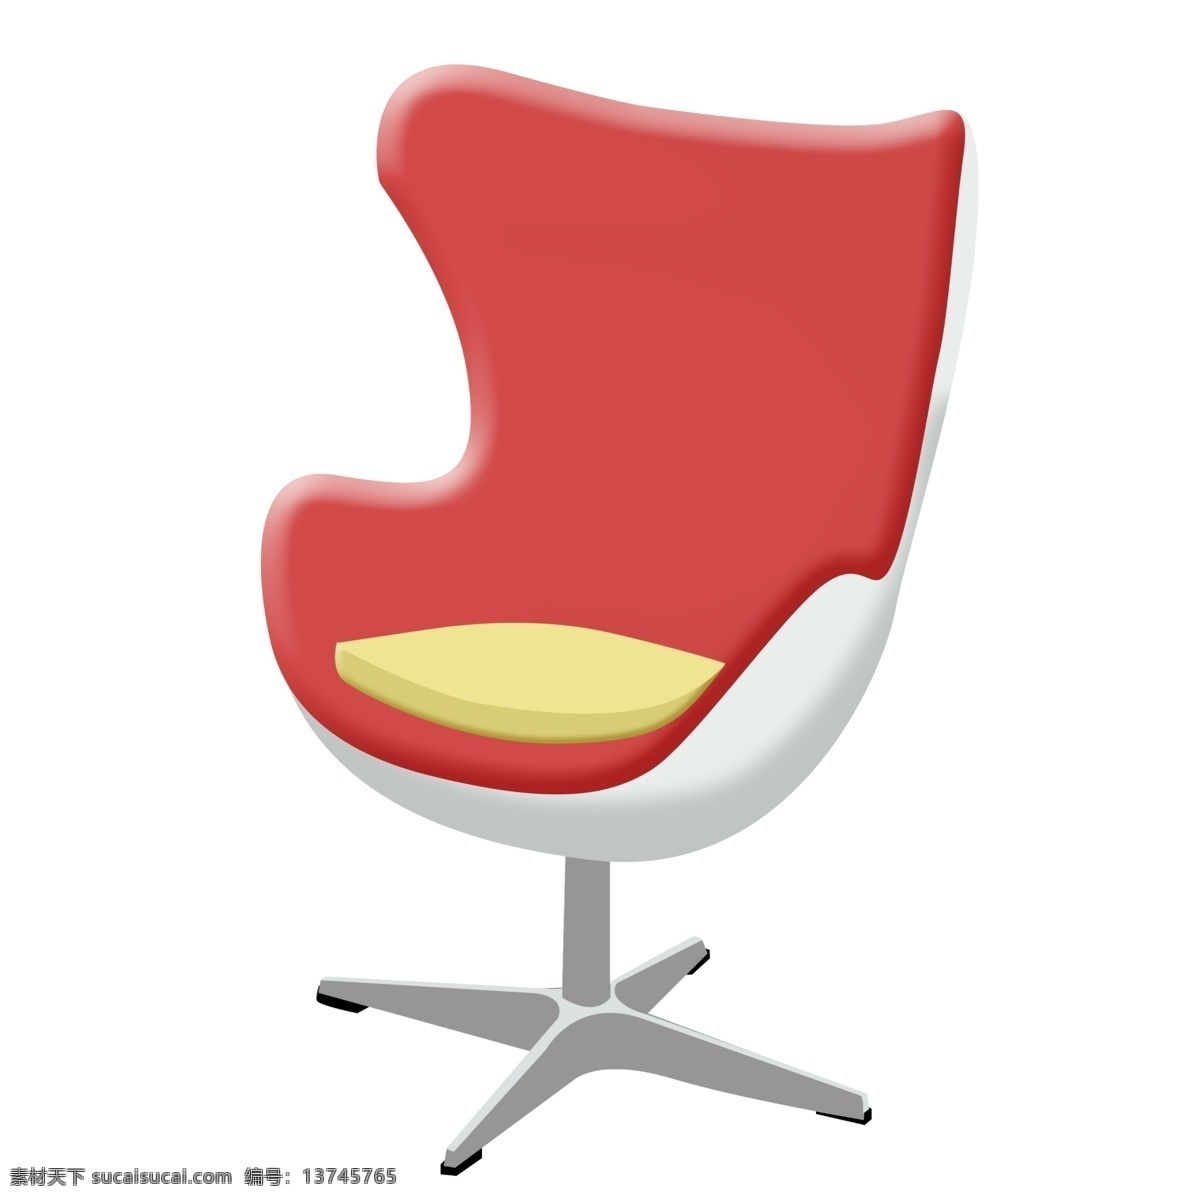 红色 椅子 装饰 插画 红色的椅子 转轮椅子 漂亮的椅子 创意椅子 立体椅子 卡通椅子 家具椅子